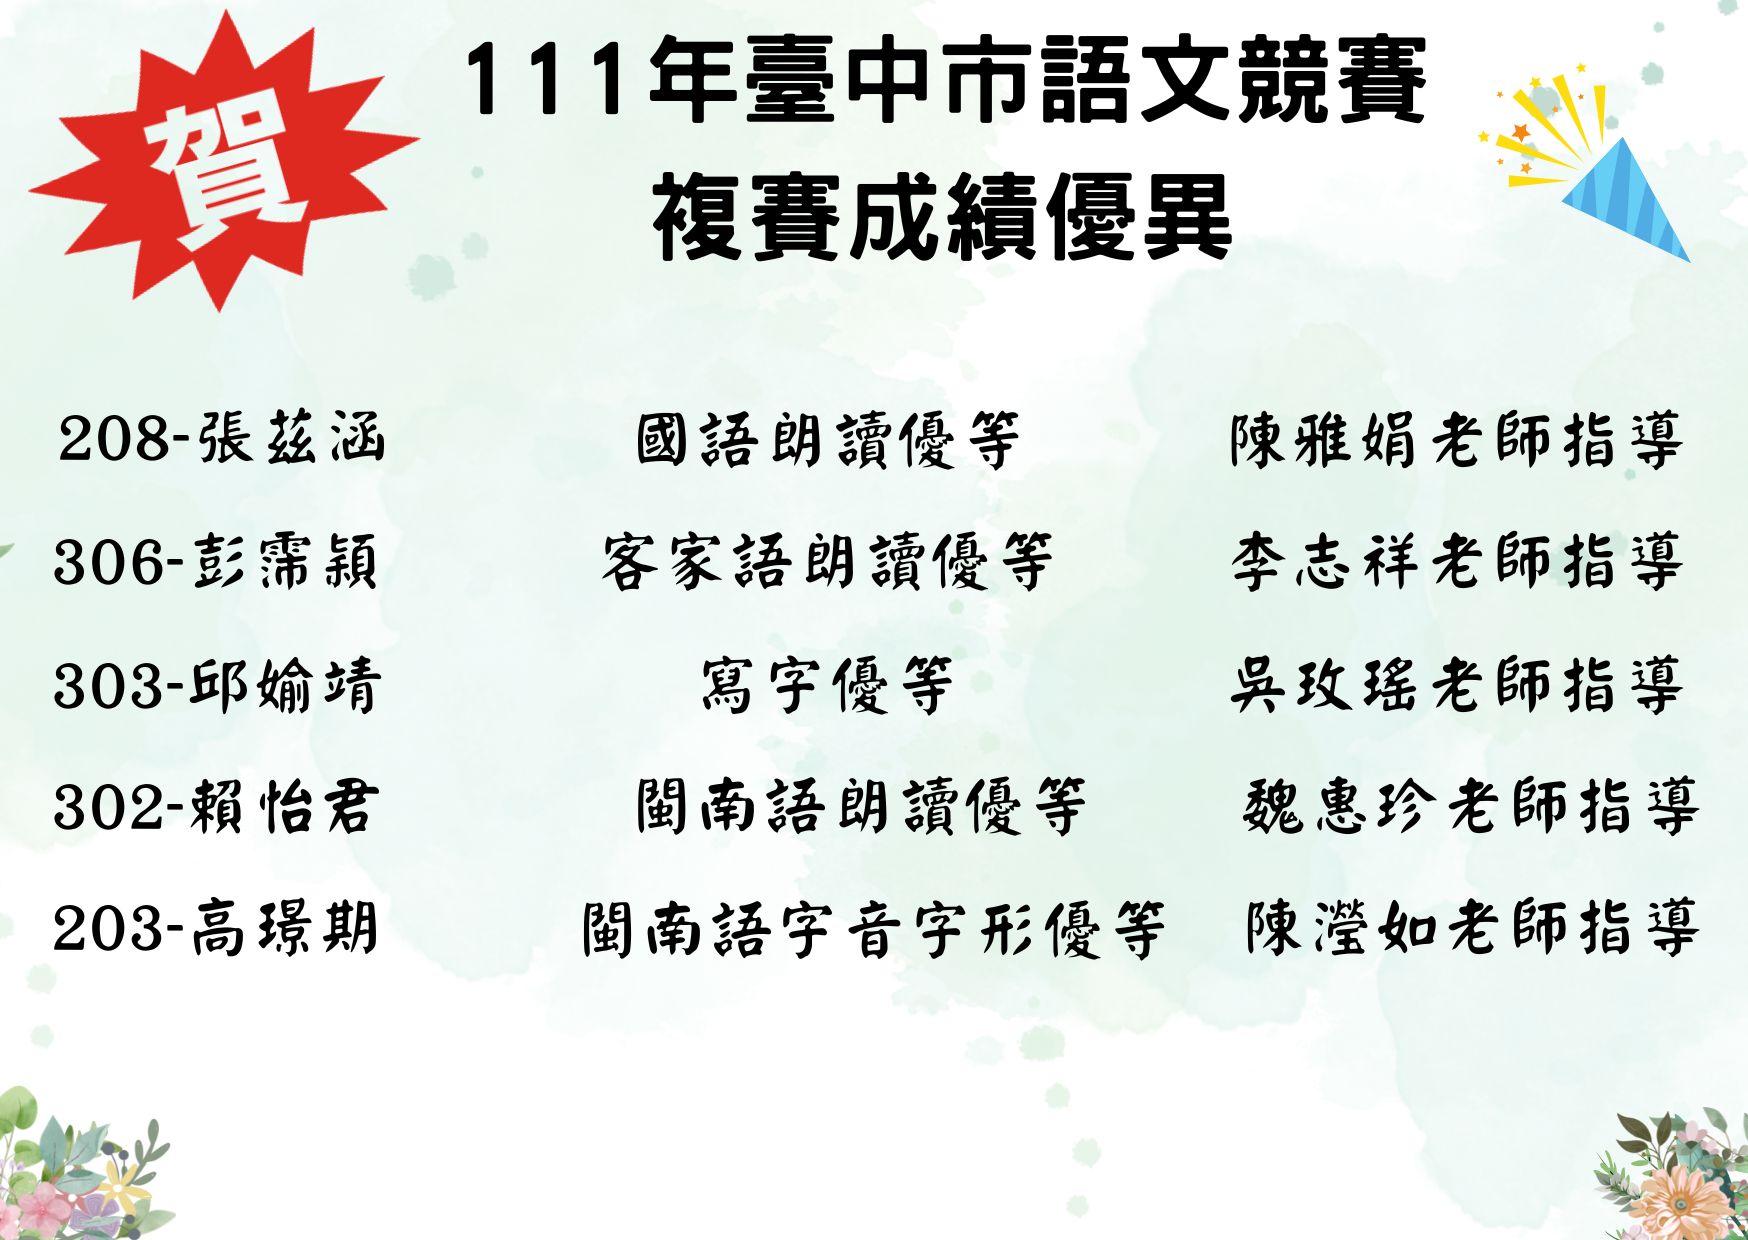 臺中市語文競賽複賽的榜單